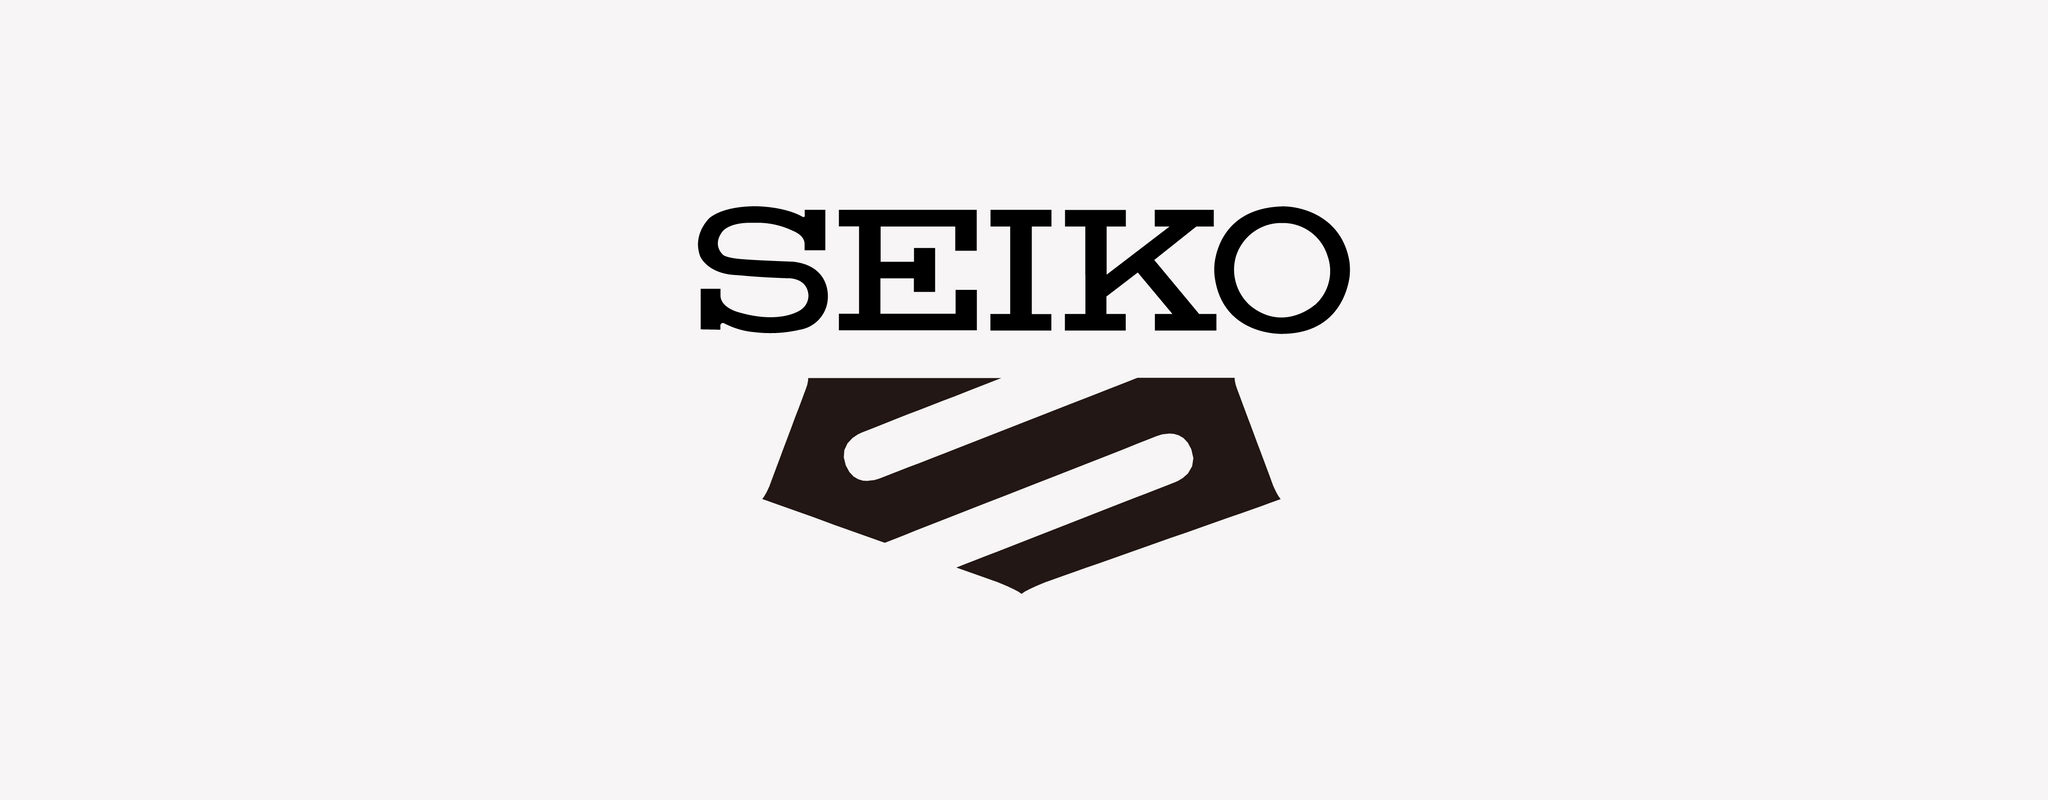 Seiko 5 Sports